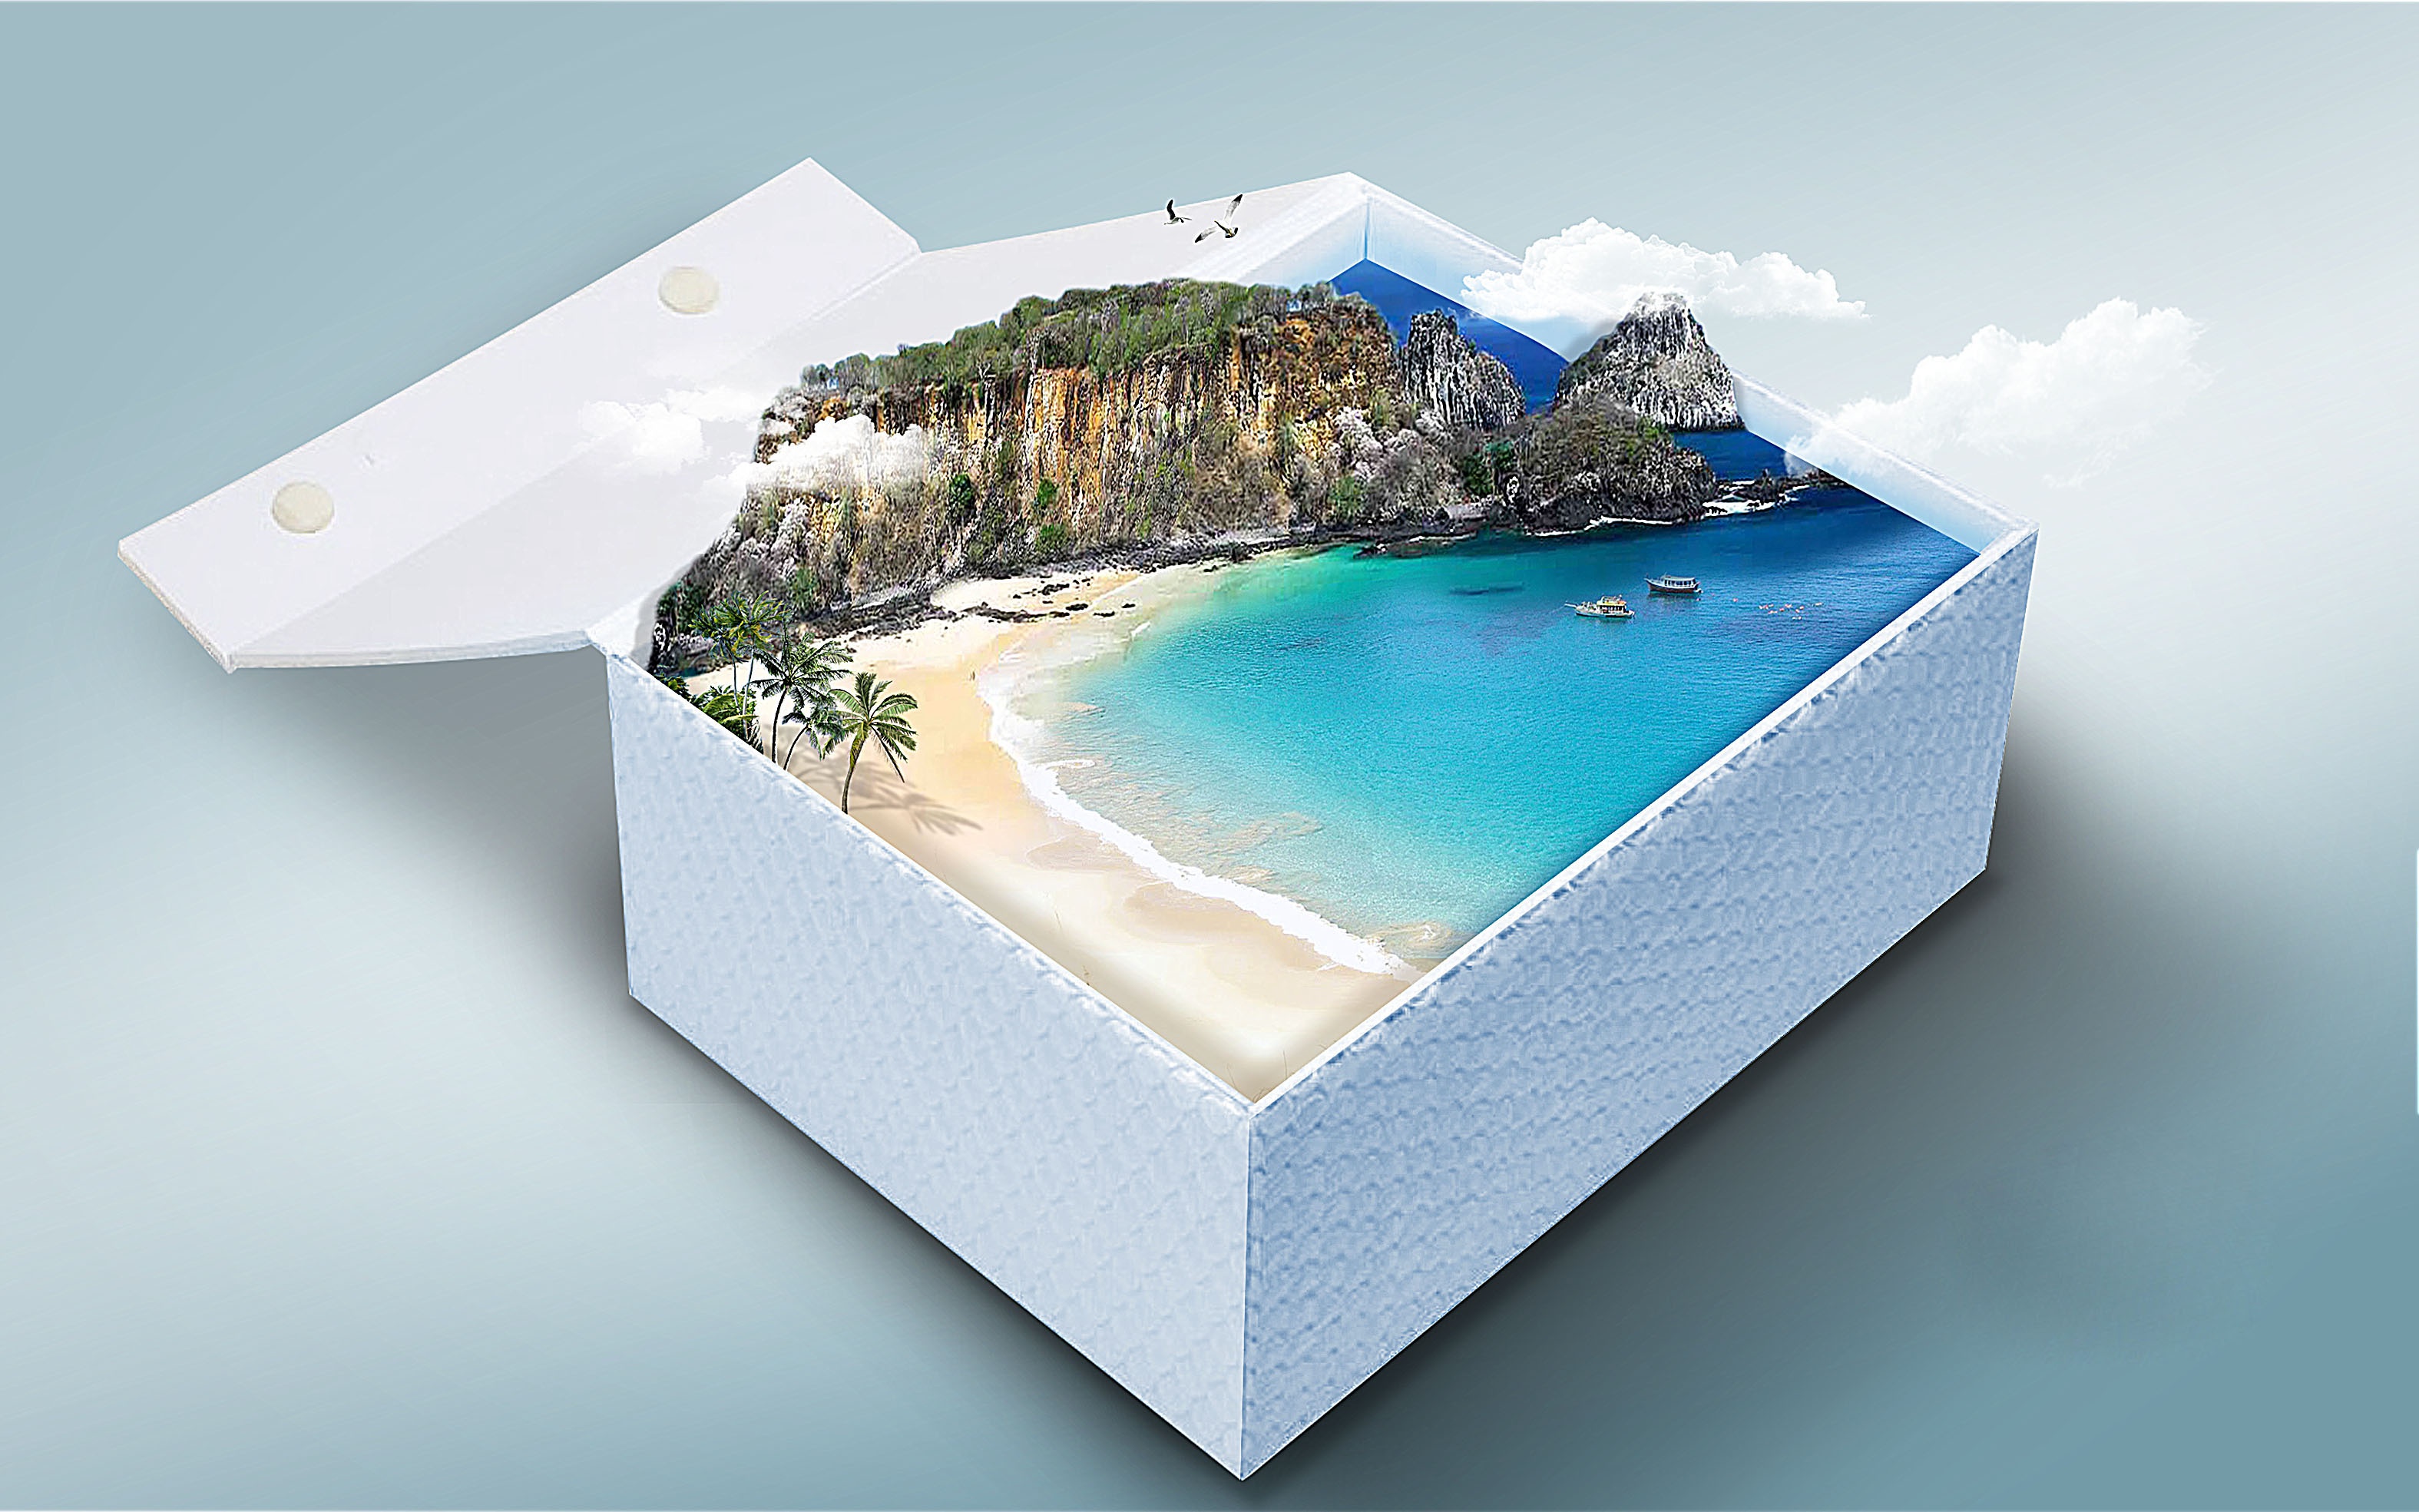 Box island. Море в подарок. Остров подарков. Коробка в море. Сувениры связанные с морем.